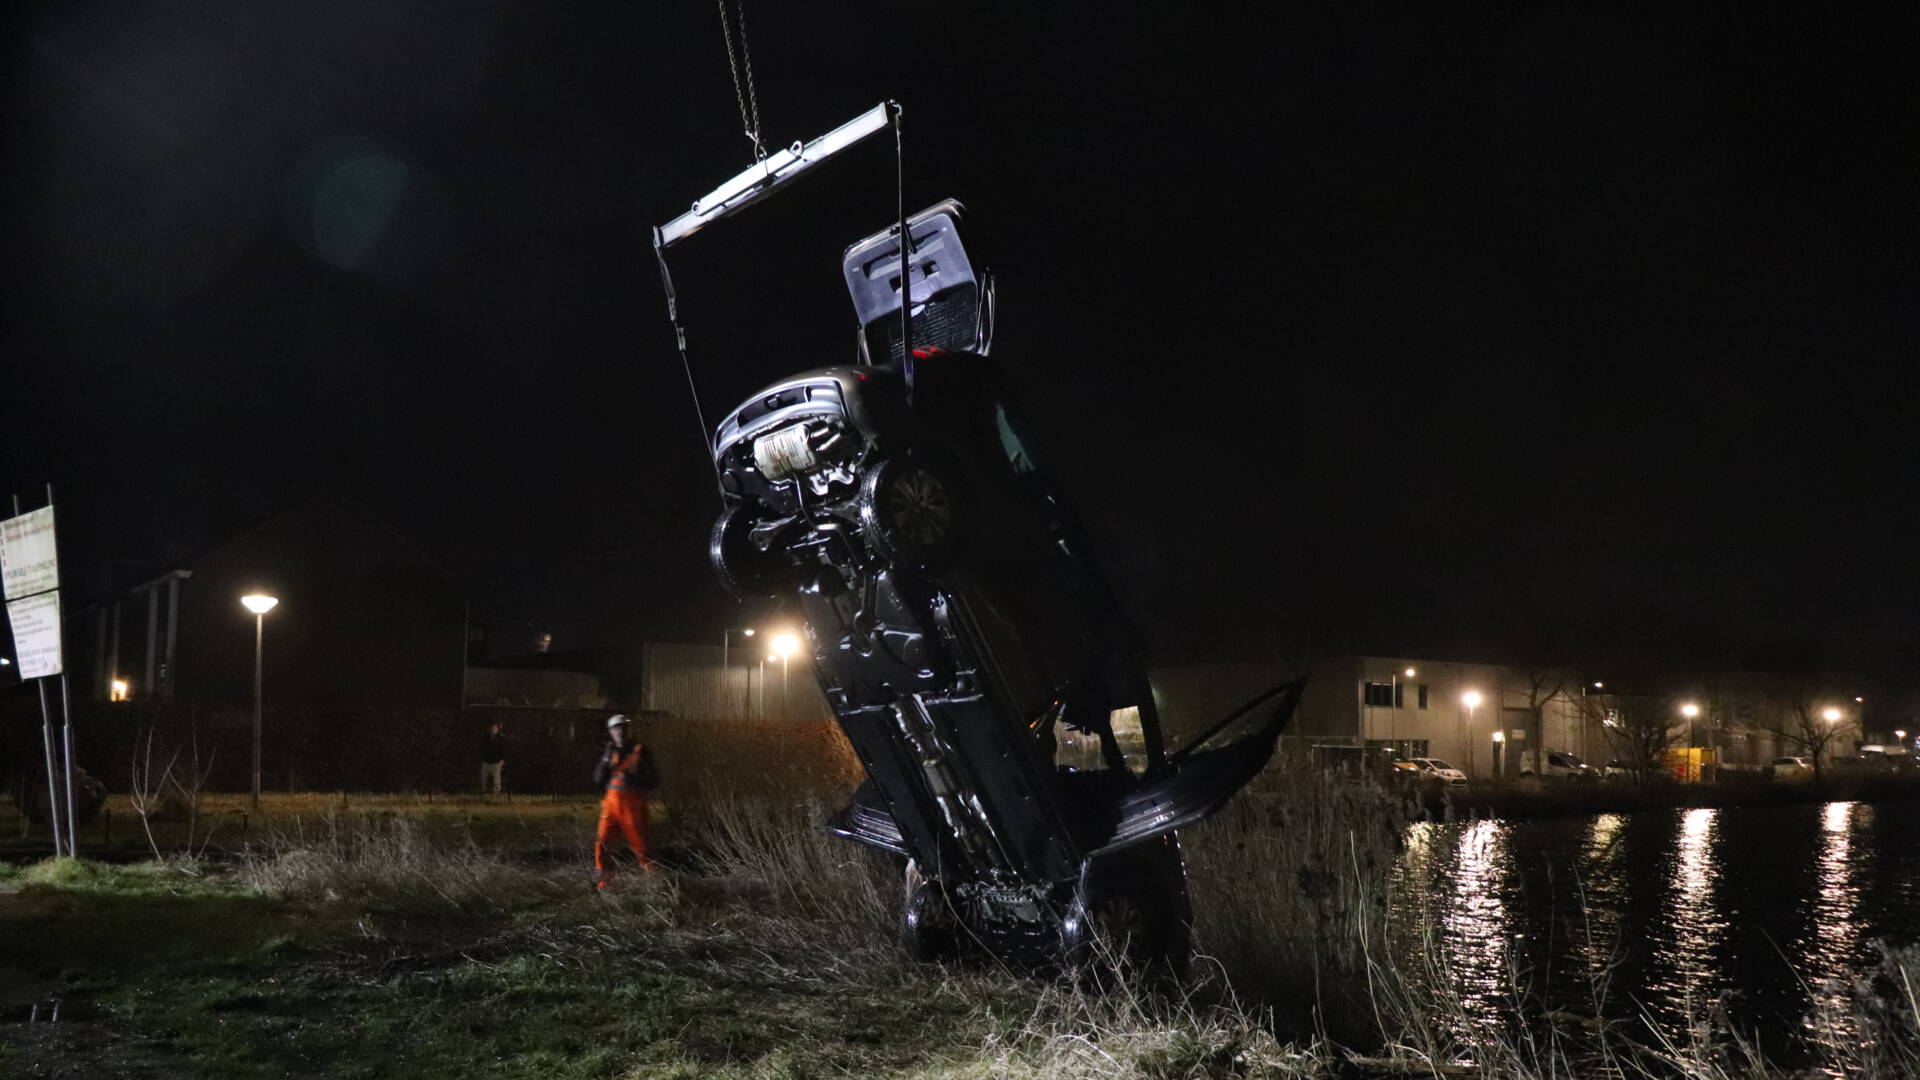 سقوط سيارة تحوي ثلاثة أطفال وامهم في الماء في أمستردام، الام مفقودة